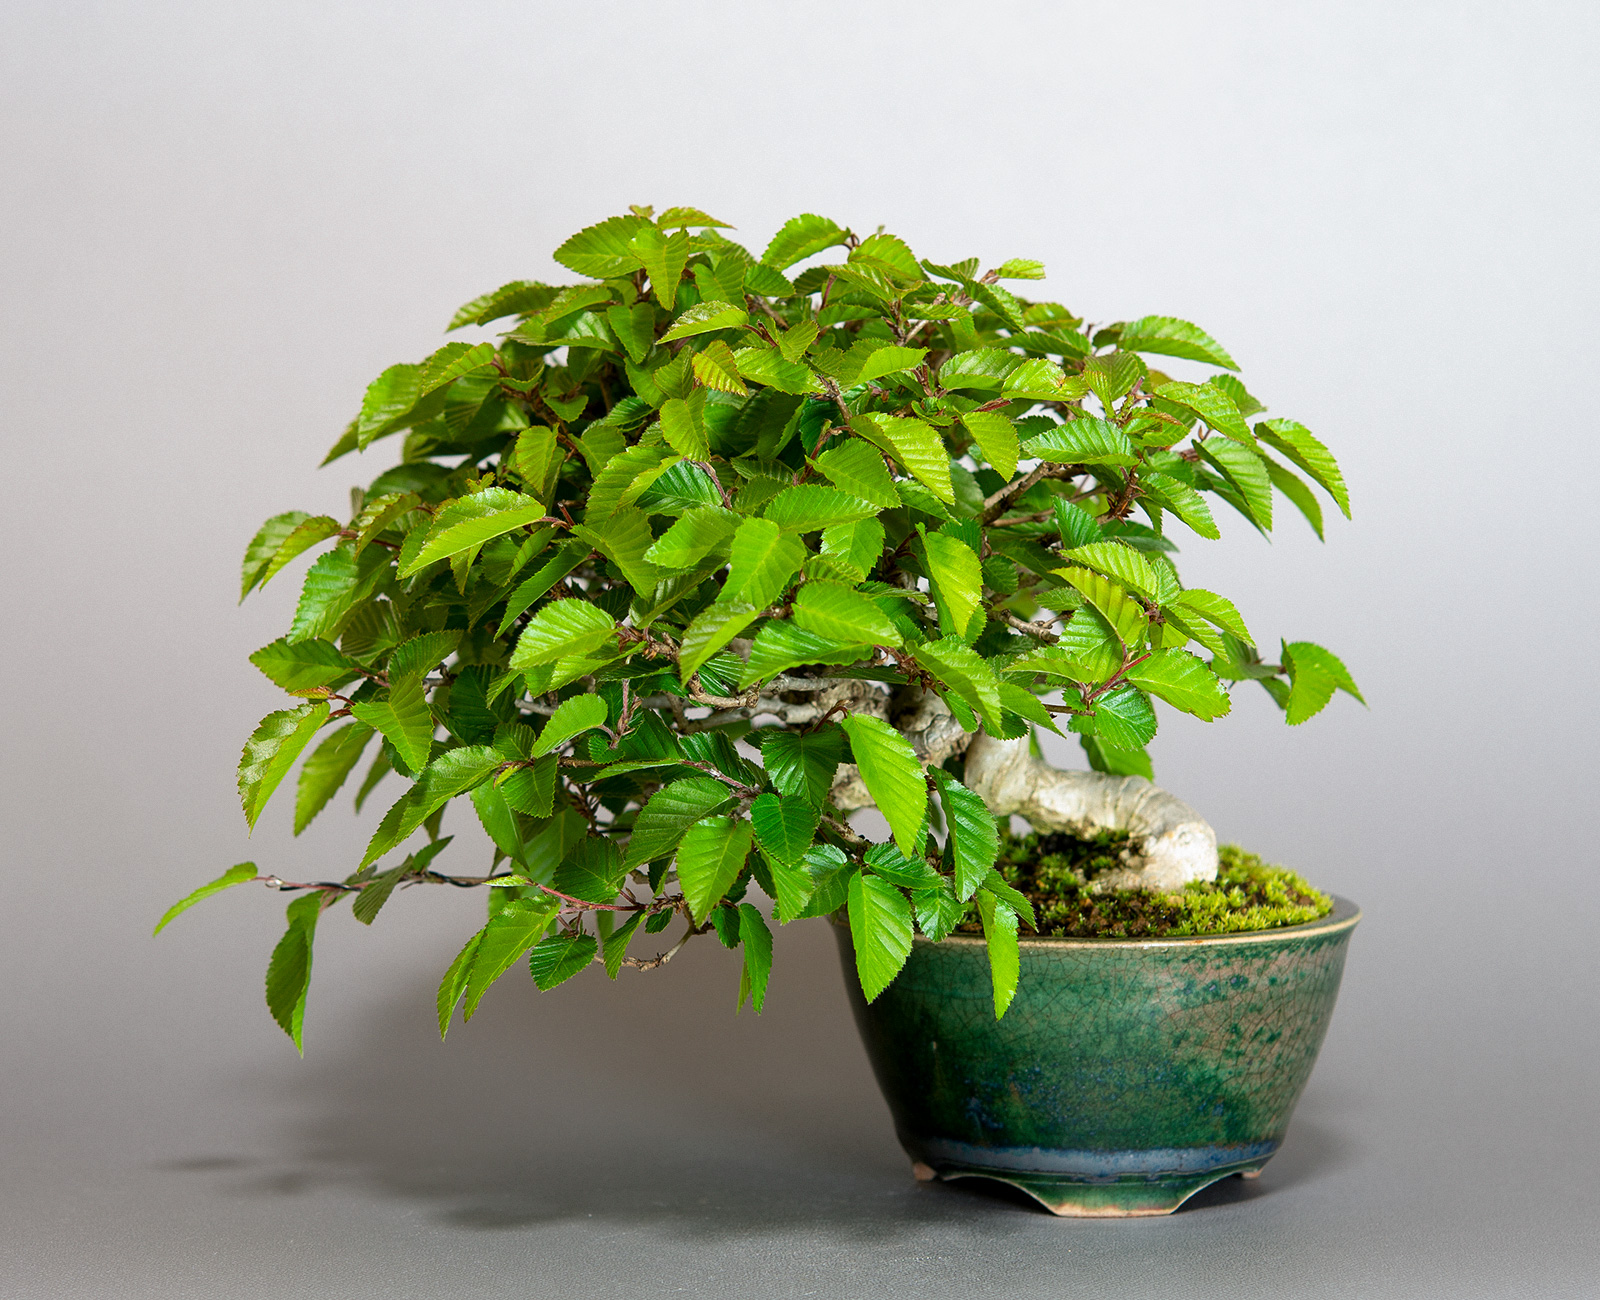 雑木盆栽・葉もの盆栽・Zouki bonsai（葉の美しさを楽しむ盆栽）の成長記録と育て方・作り方・手入れの仕方を紹介しています。